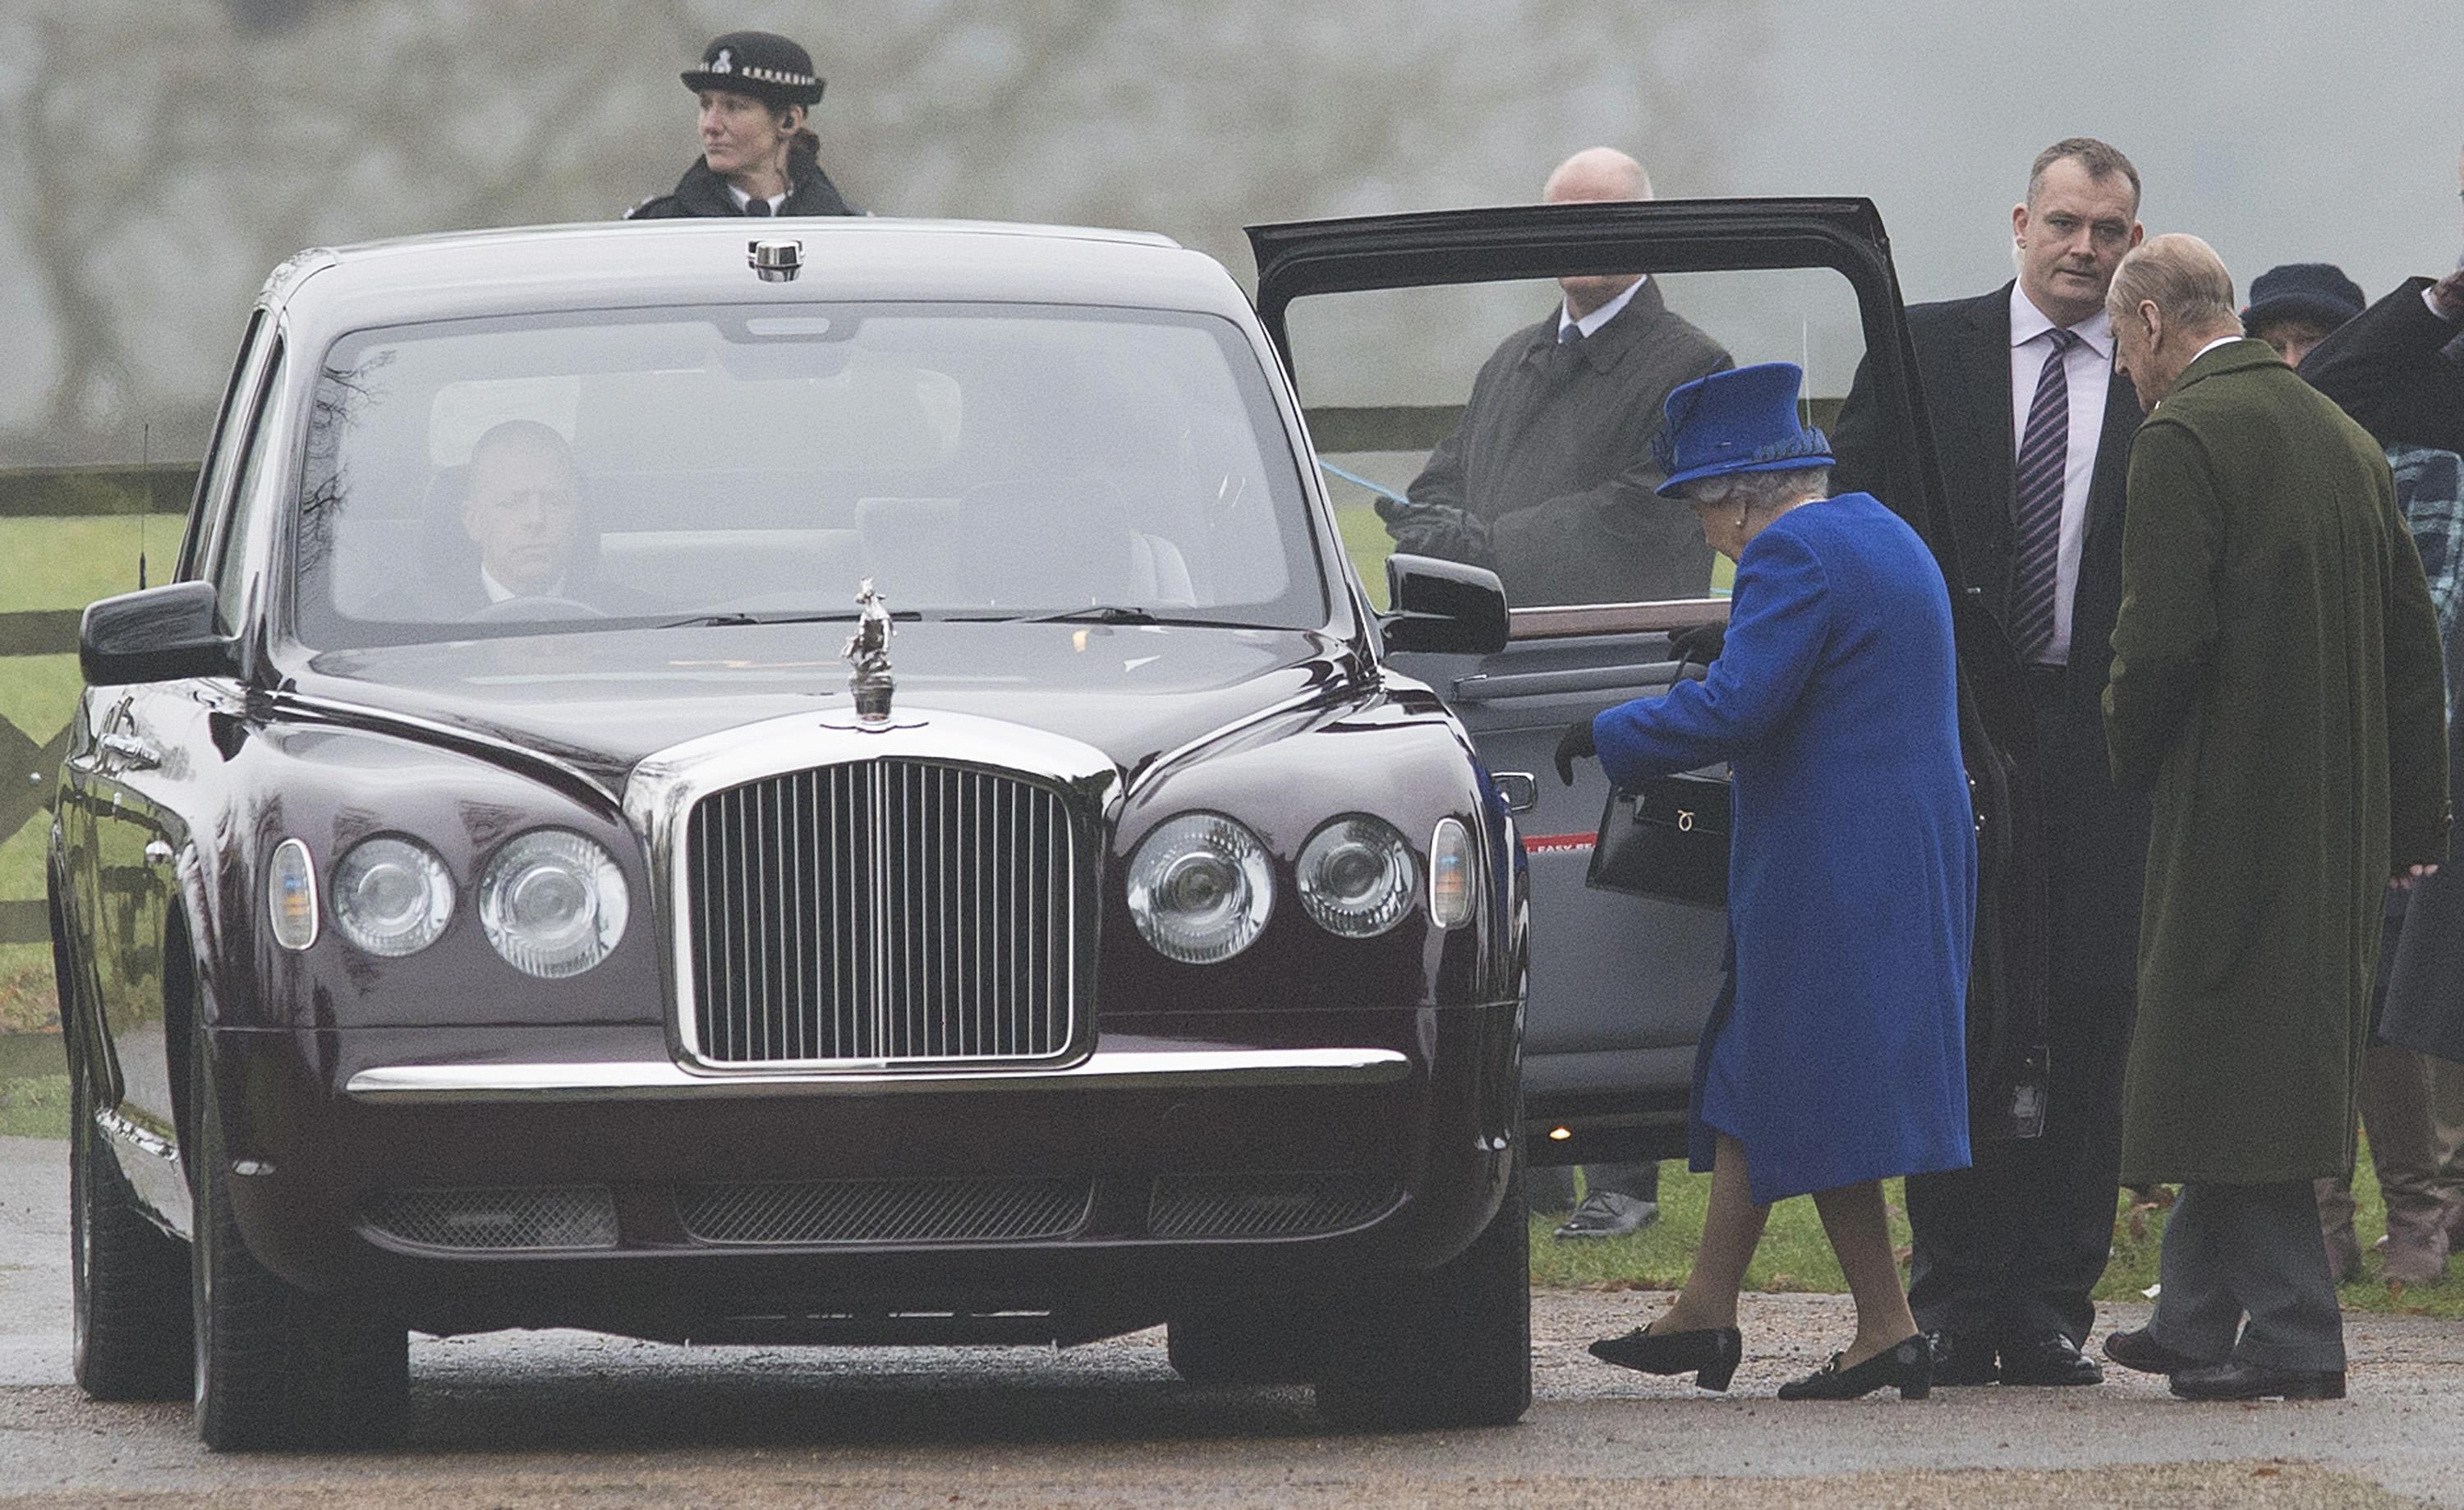 ملكة بريطانيا إليزابيث الثانية تظهر بعد تعافيها من نزله برد حاده مع زوجها الأمير فيليب  (2)